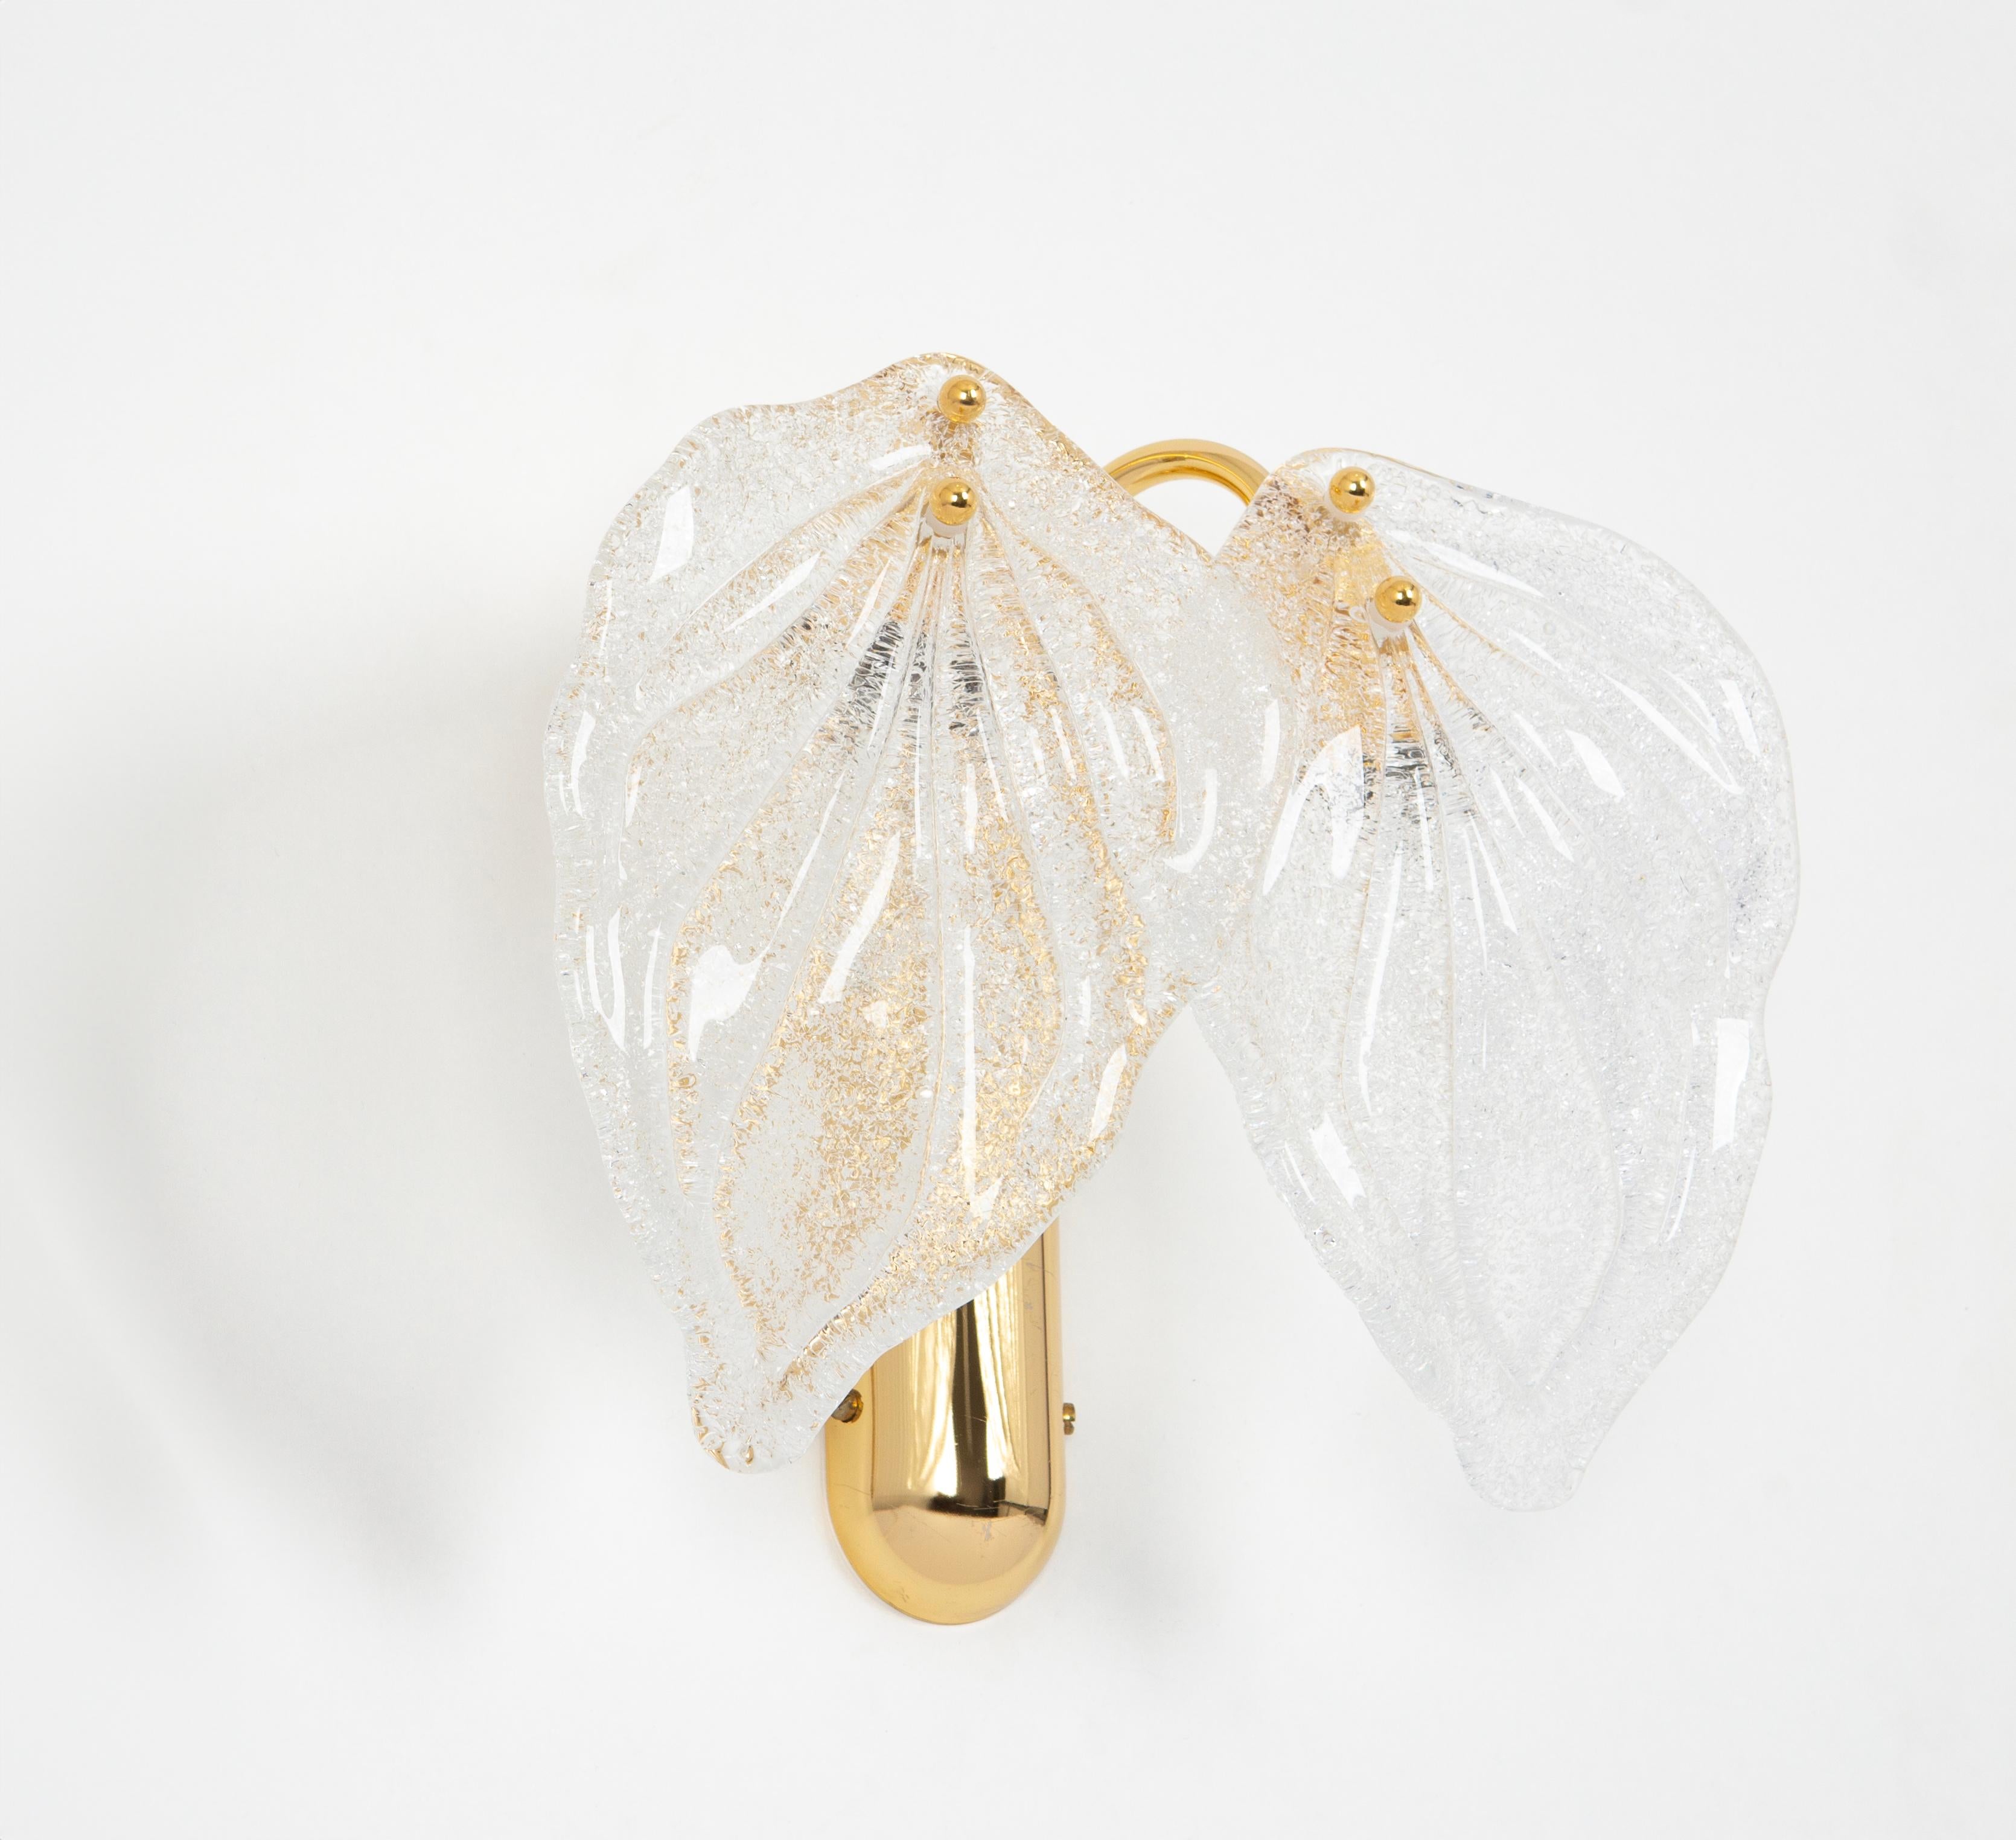 Wunderschöne mundgeblasene Blattlampen aus der Manufaktur Novaresi, Italien, mit je zwei großen Blättern, 24-karätig vergoldeter Rahmen.
Hochwertig und in sehr gutem Zustand. Gereinigt, gut verkabelt und einsatzbereit. 

Die Leuchte benötigt 2 x E14